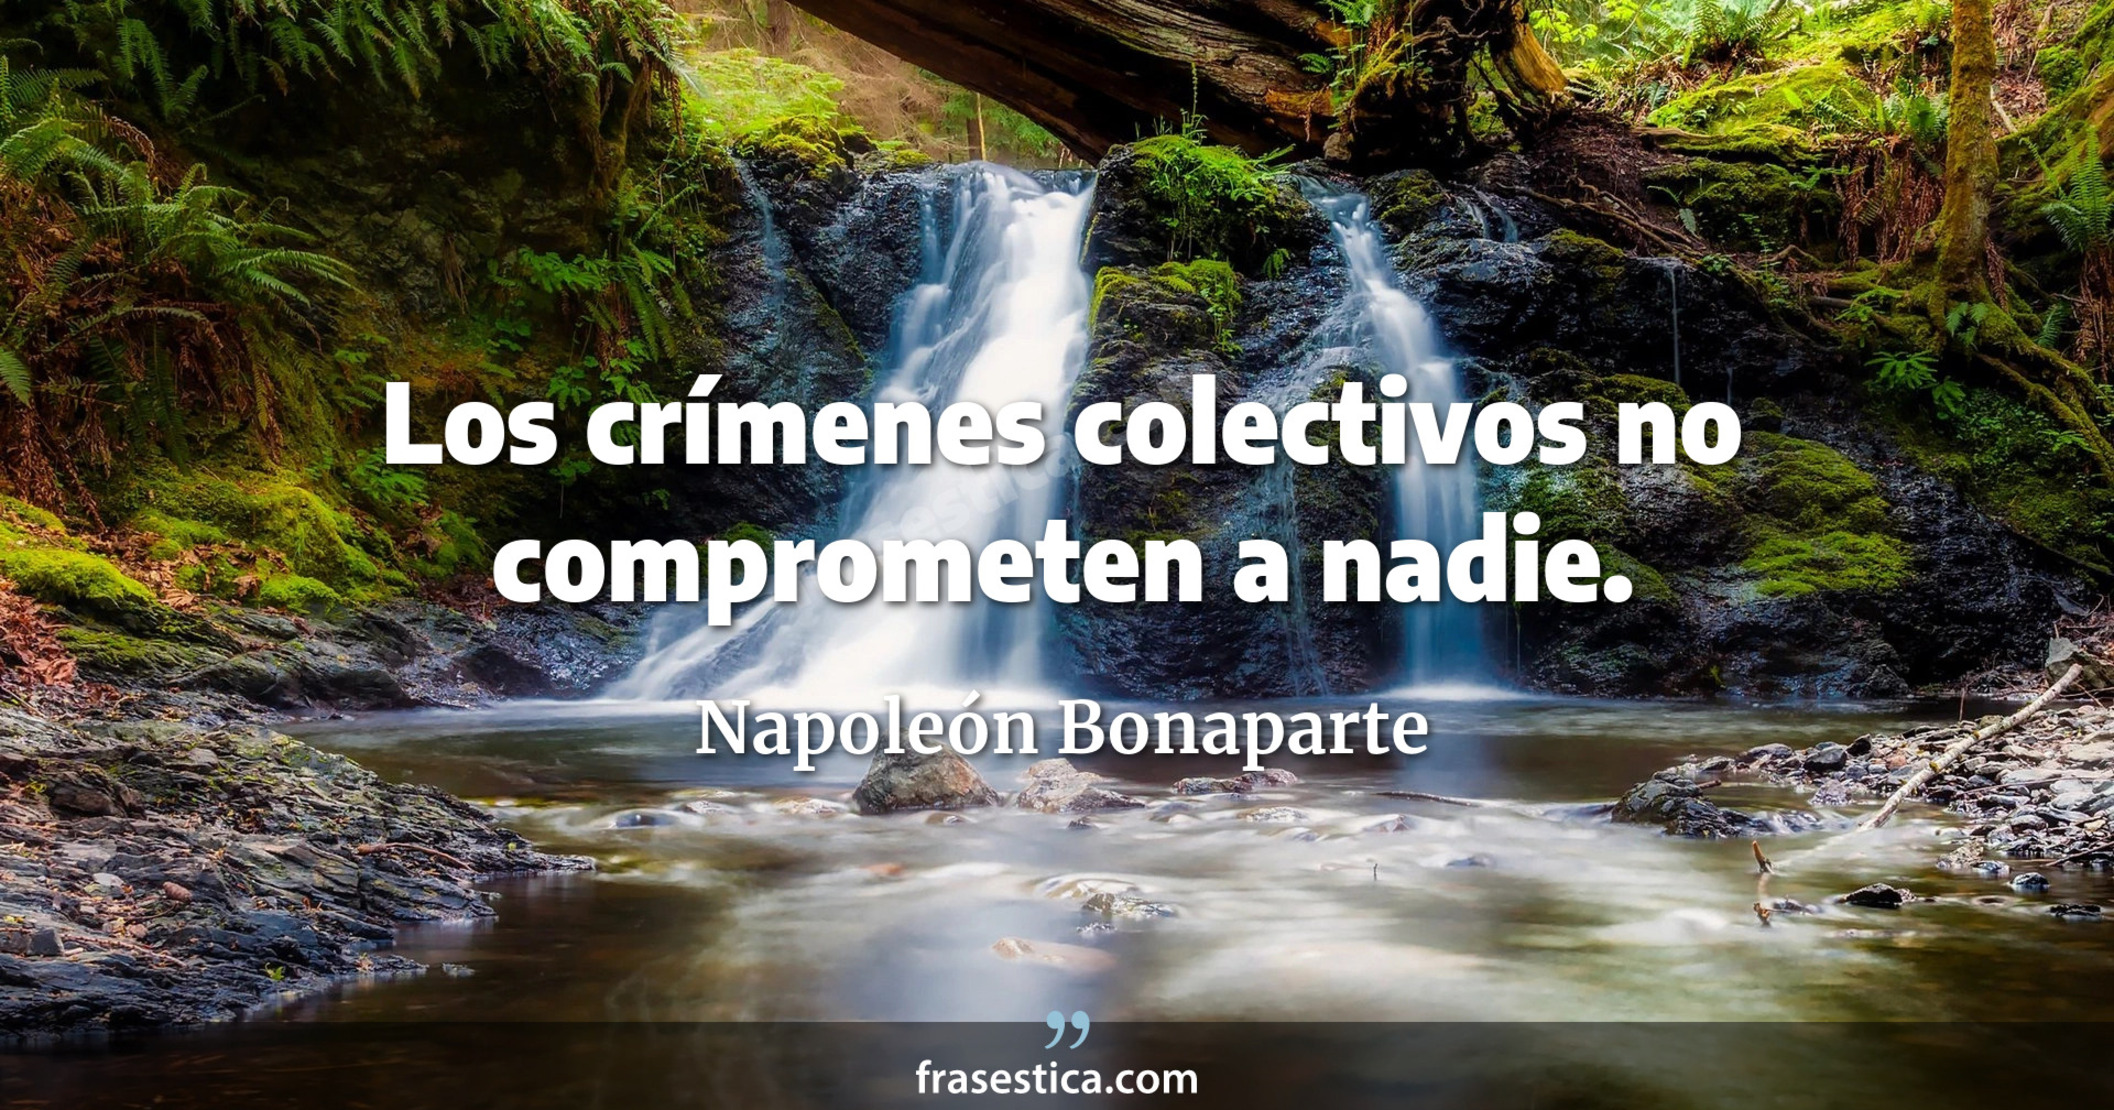 Los crímenes colectivos no comprometen a nadie. - Napoleón Bonaparte